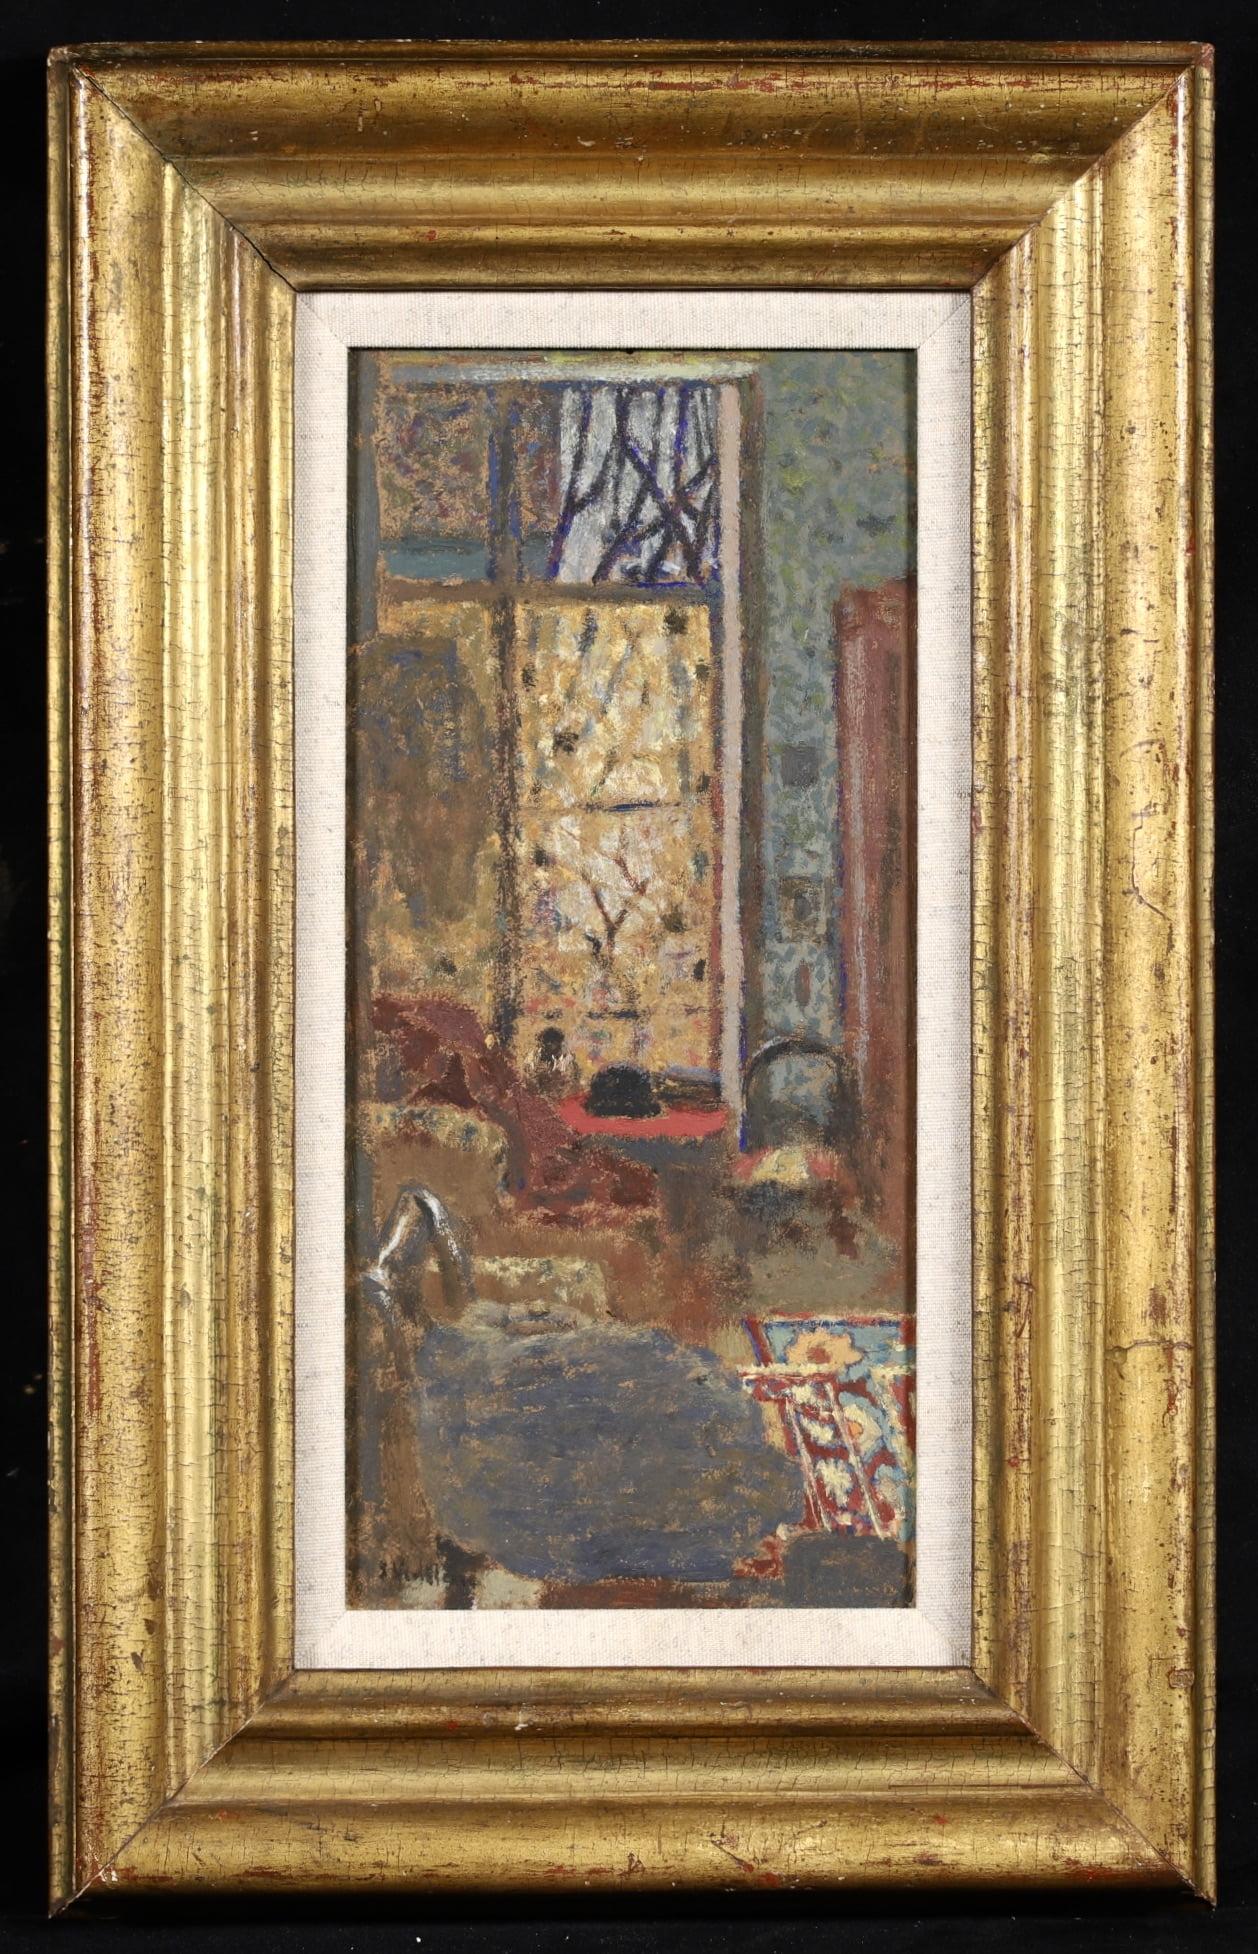 Interieur a la fenetre ouverte - Post Impressionist Oil by Edouard Vuillard